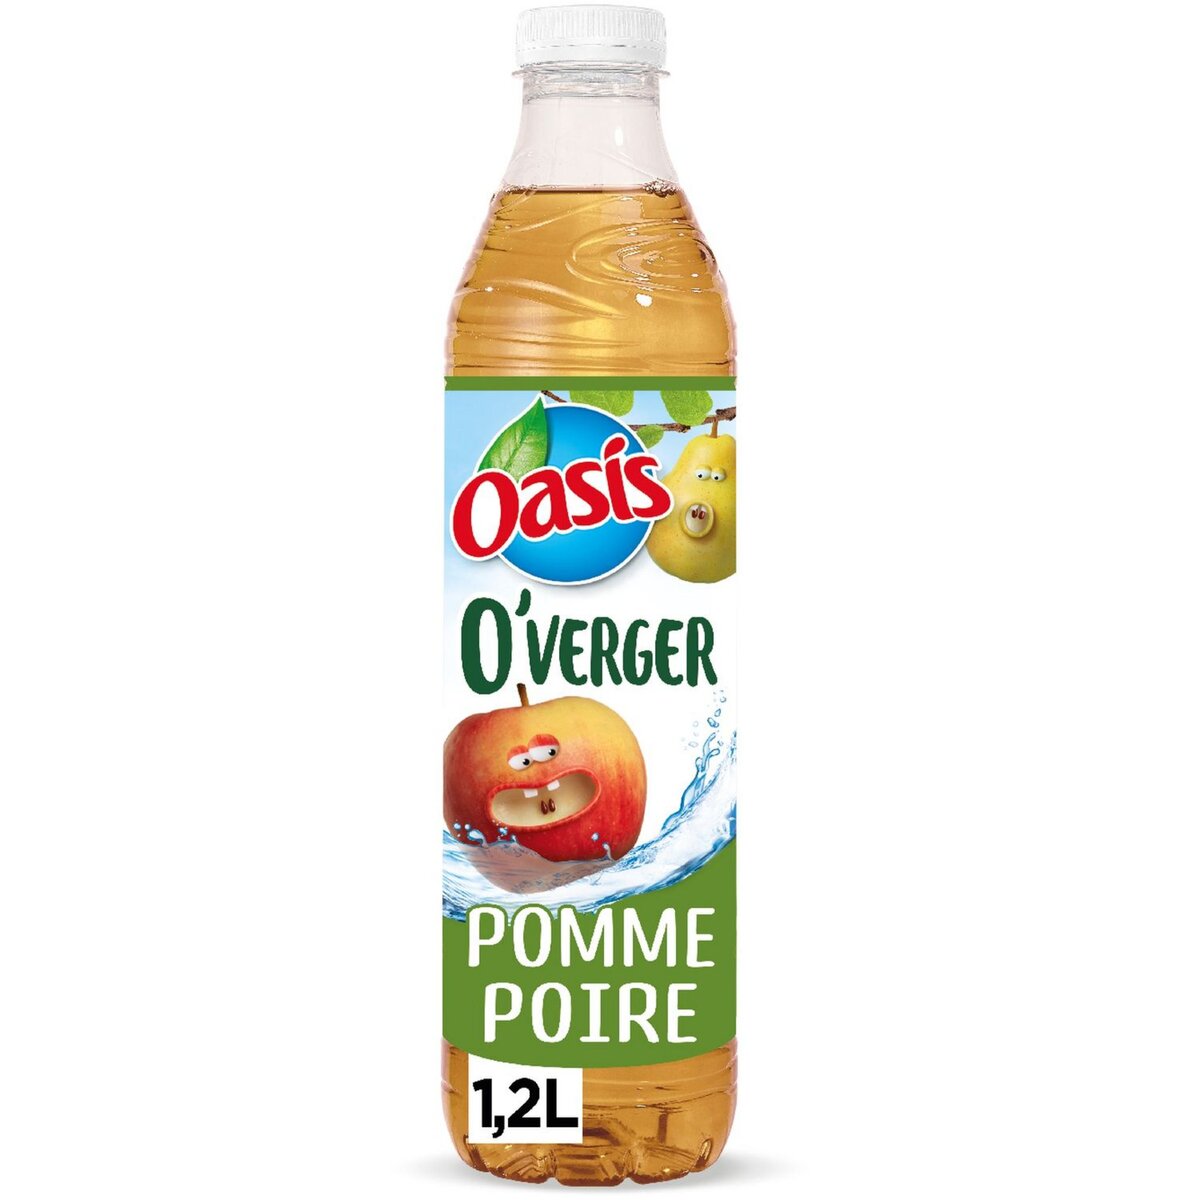 OASIS O'Verger eau fruitée saveur pomme poire 1,2l